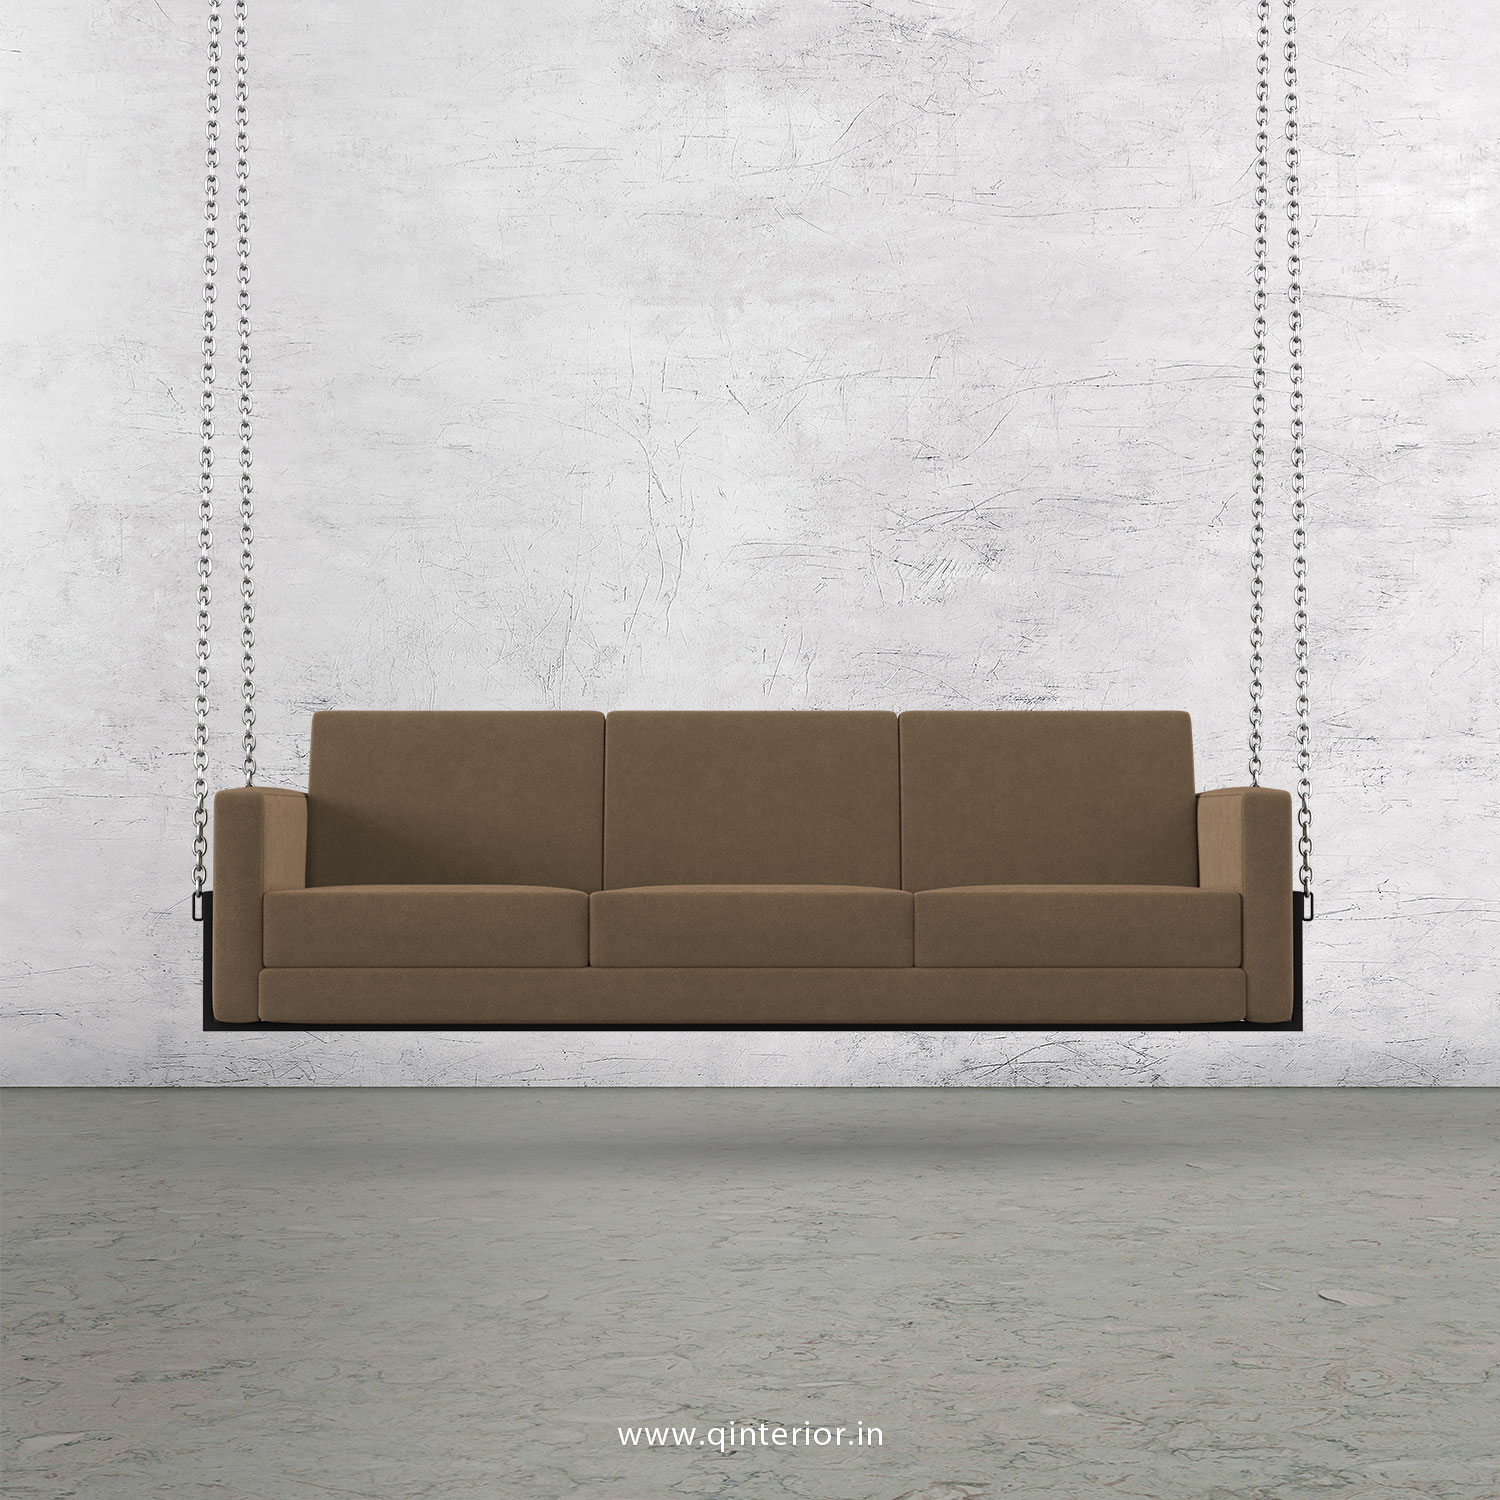 NIRVANA 3 Seater Swing Sofa in Velvet Fabric - SSF001 VL03